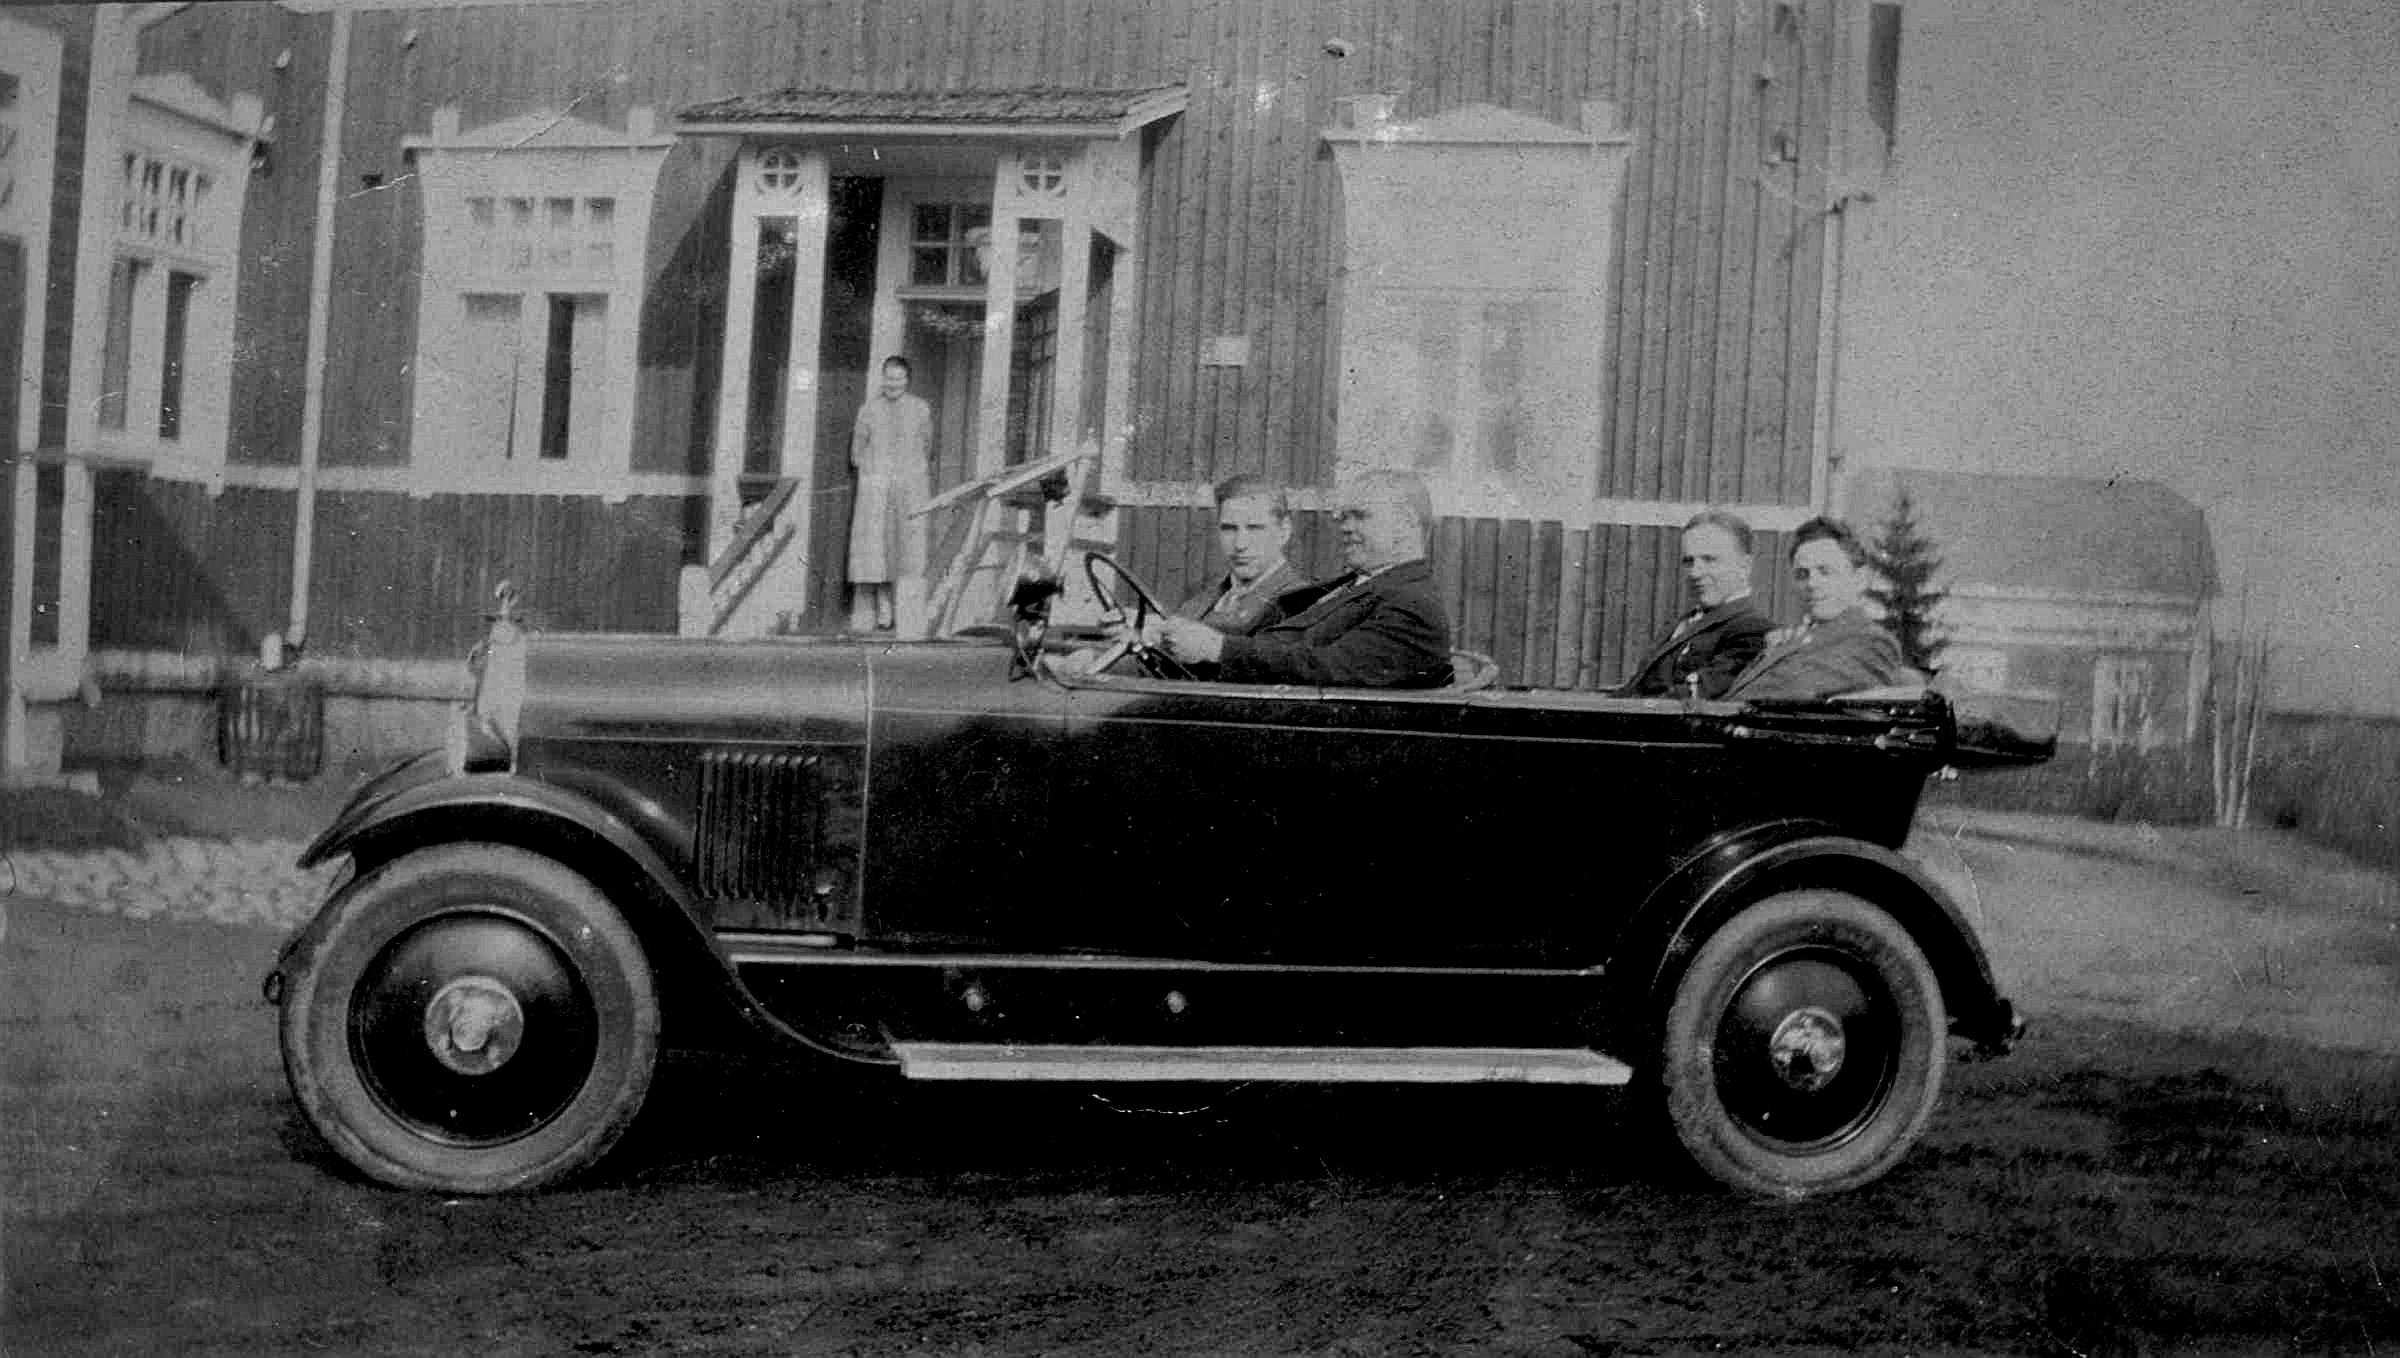 Här lärare Sjöblad provkörande en bil på skolgården. Sjöblad var lärare i folkskolan under åren 1921-1930 och han var också rektor för den nygrundade Evangeliska Folkhögskolan i Dagsmark.